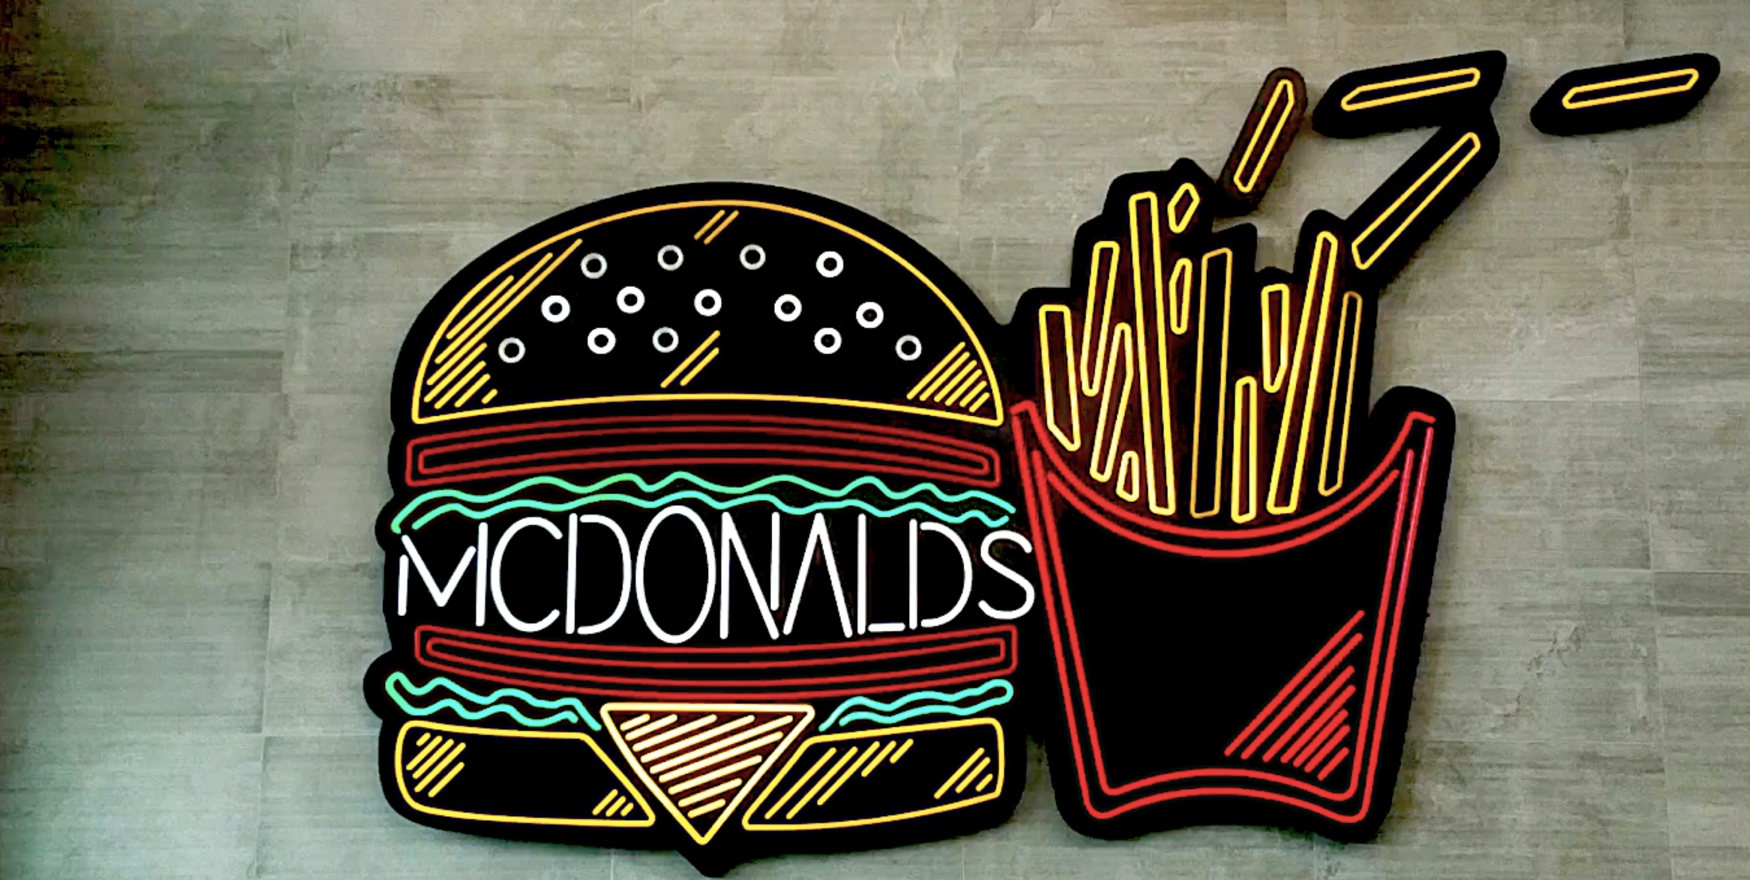 McDonalds stock, MCD stock, fast food stocks, restaurant stocks